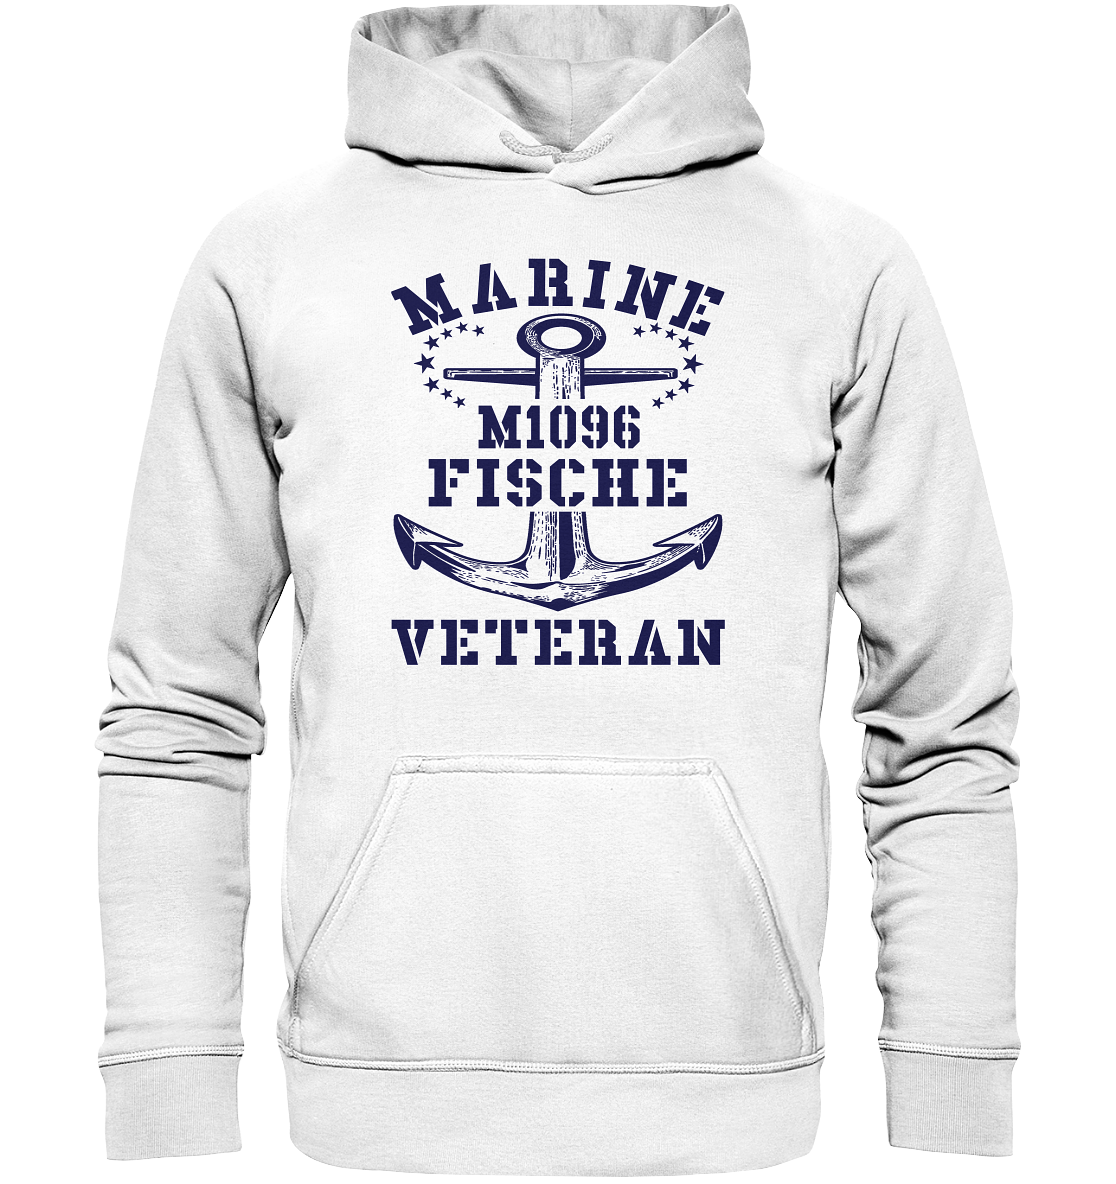 SM-Boot M1096 FISCHE Marine Veteran - Basic Unisex Hoodie